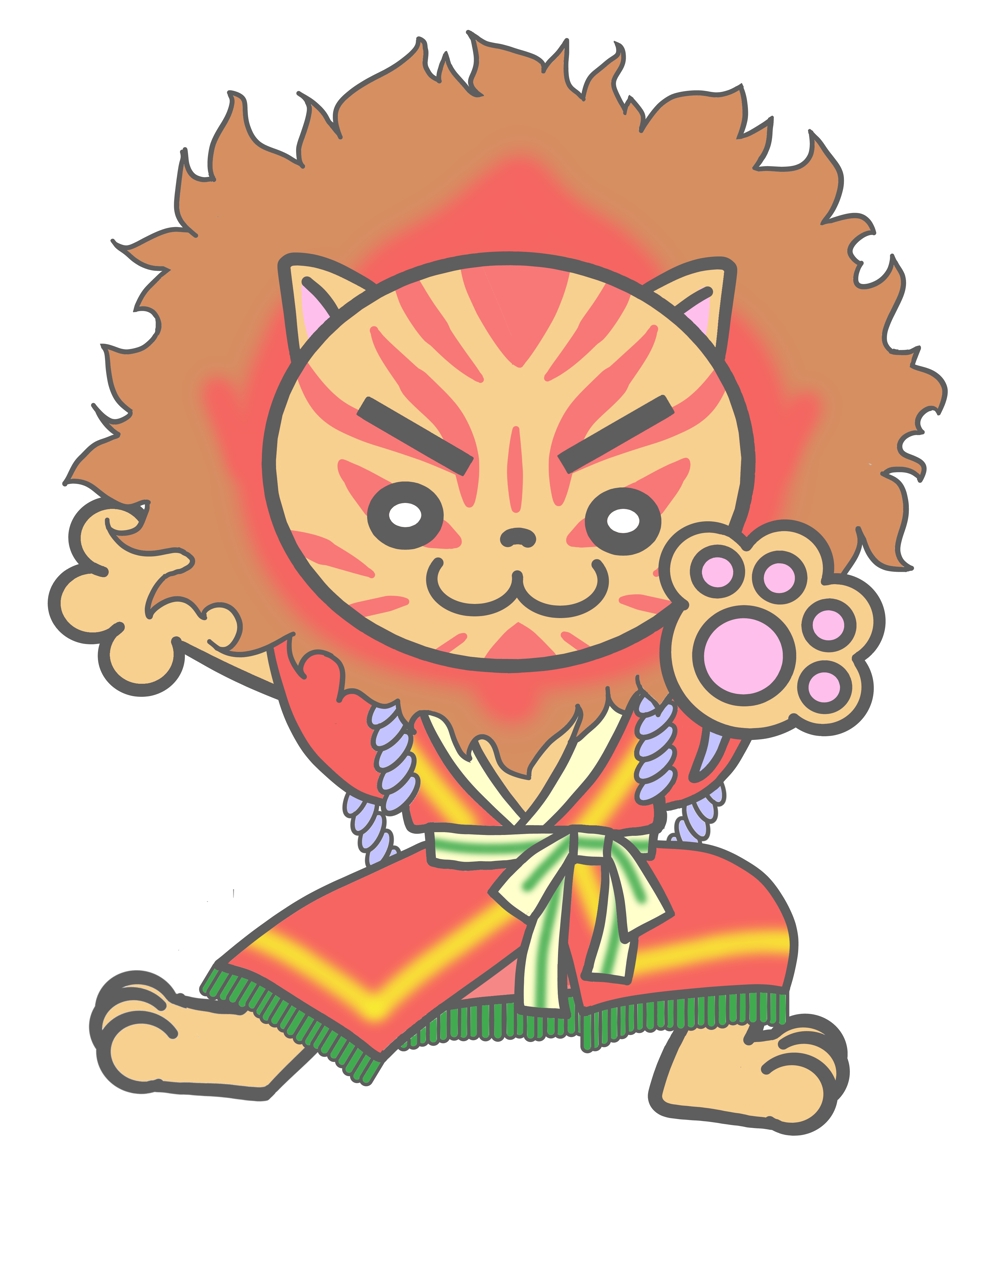 子供ウケする歌舞伎の動物「見得を切るライオン」